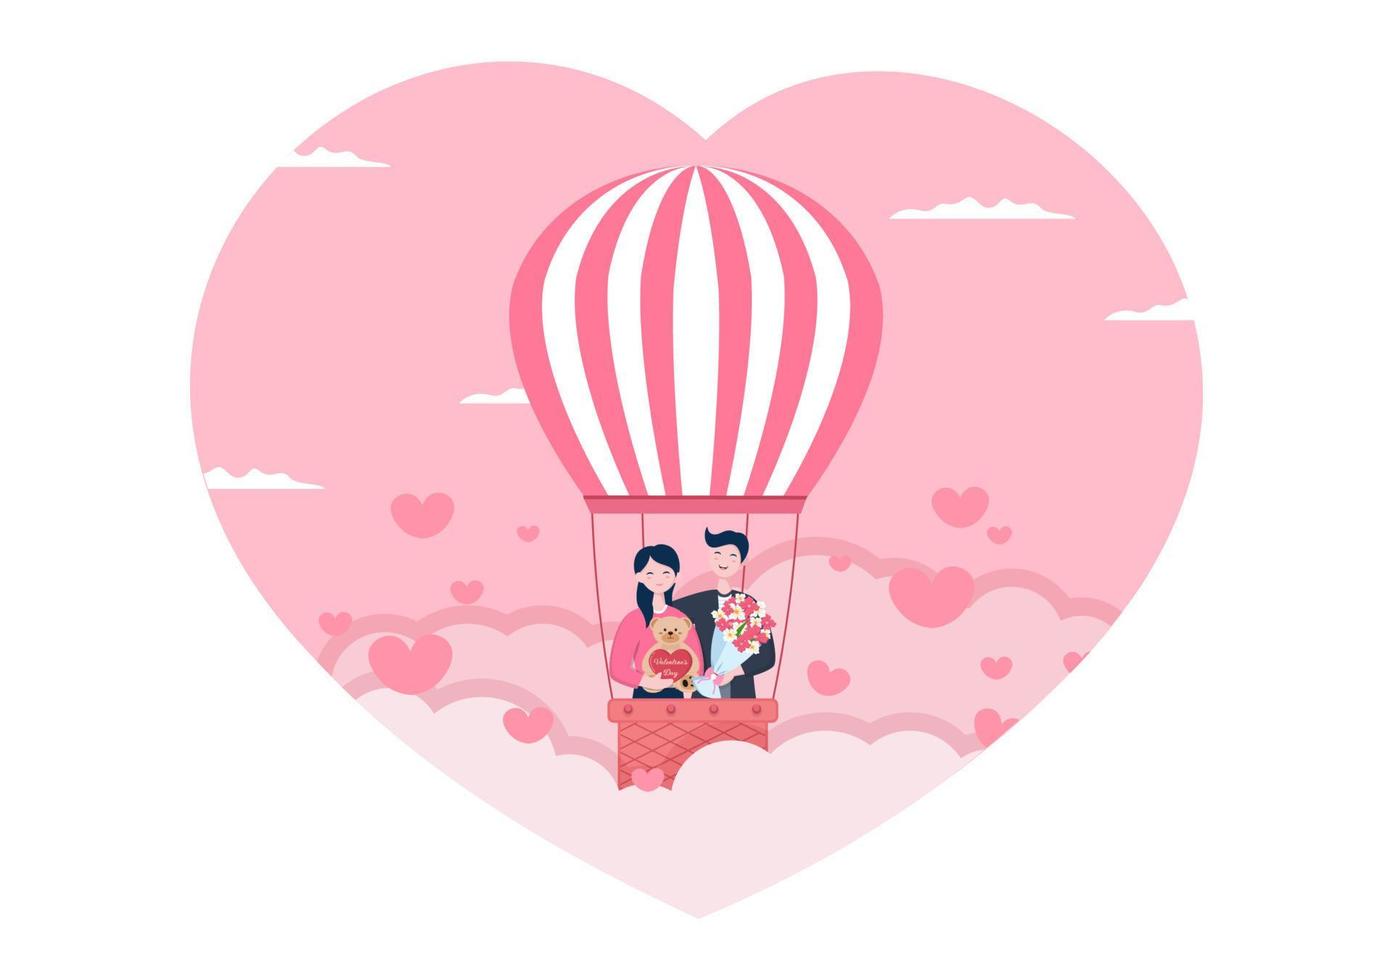 gelukkige Valentijnsdag platte ontwerp illustratie die wordt herdacht op 17 februari met teddybeer, luchtballon en cadeau voor liefde wenskaart vector